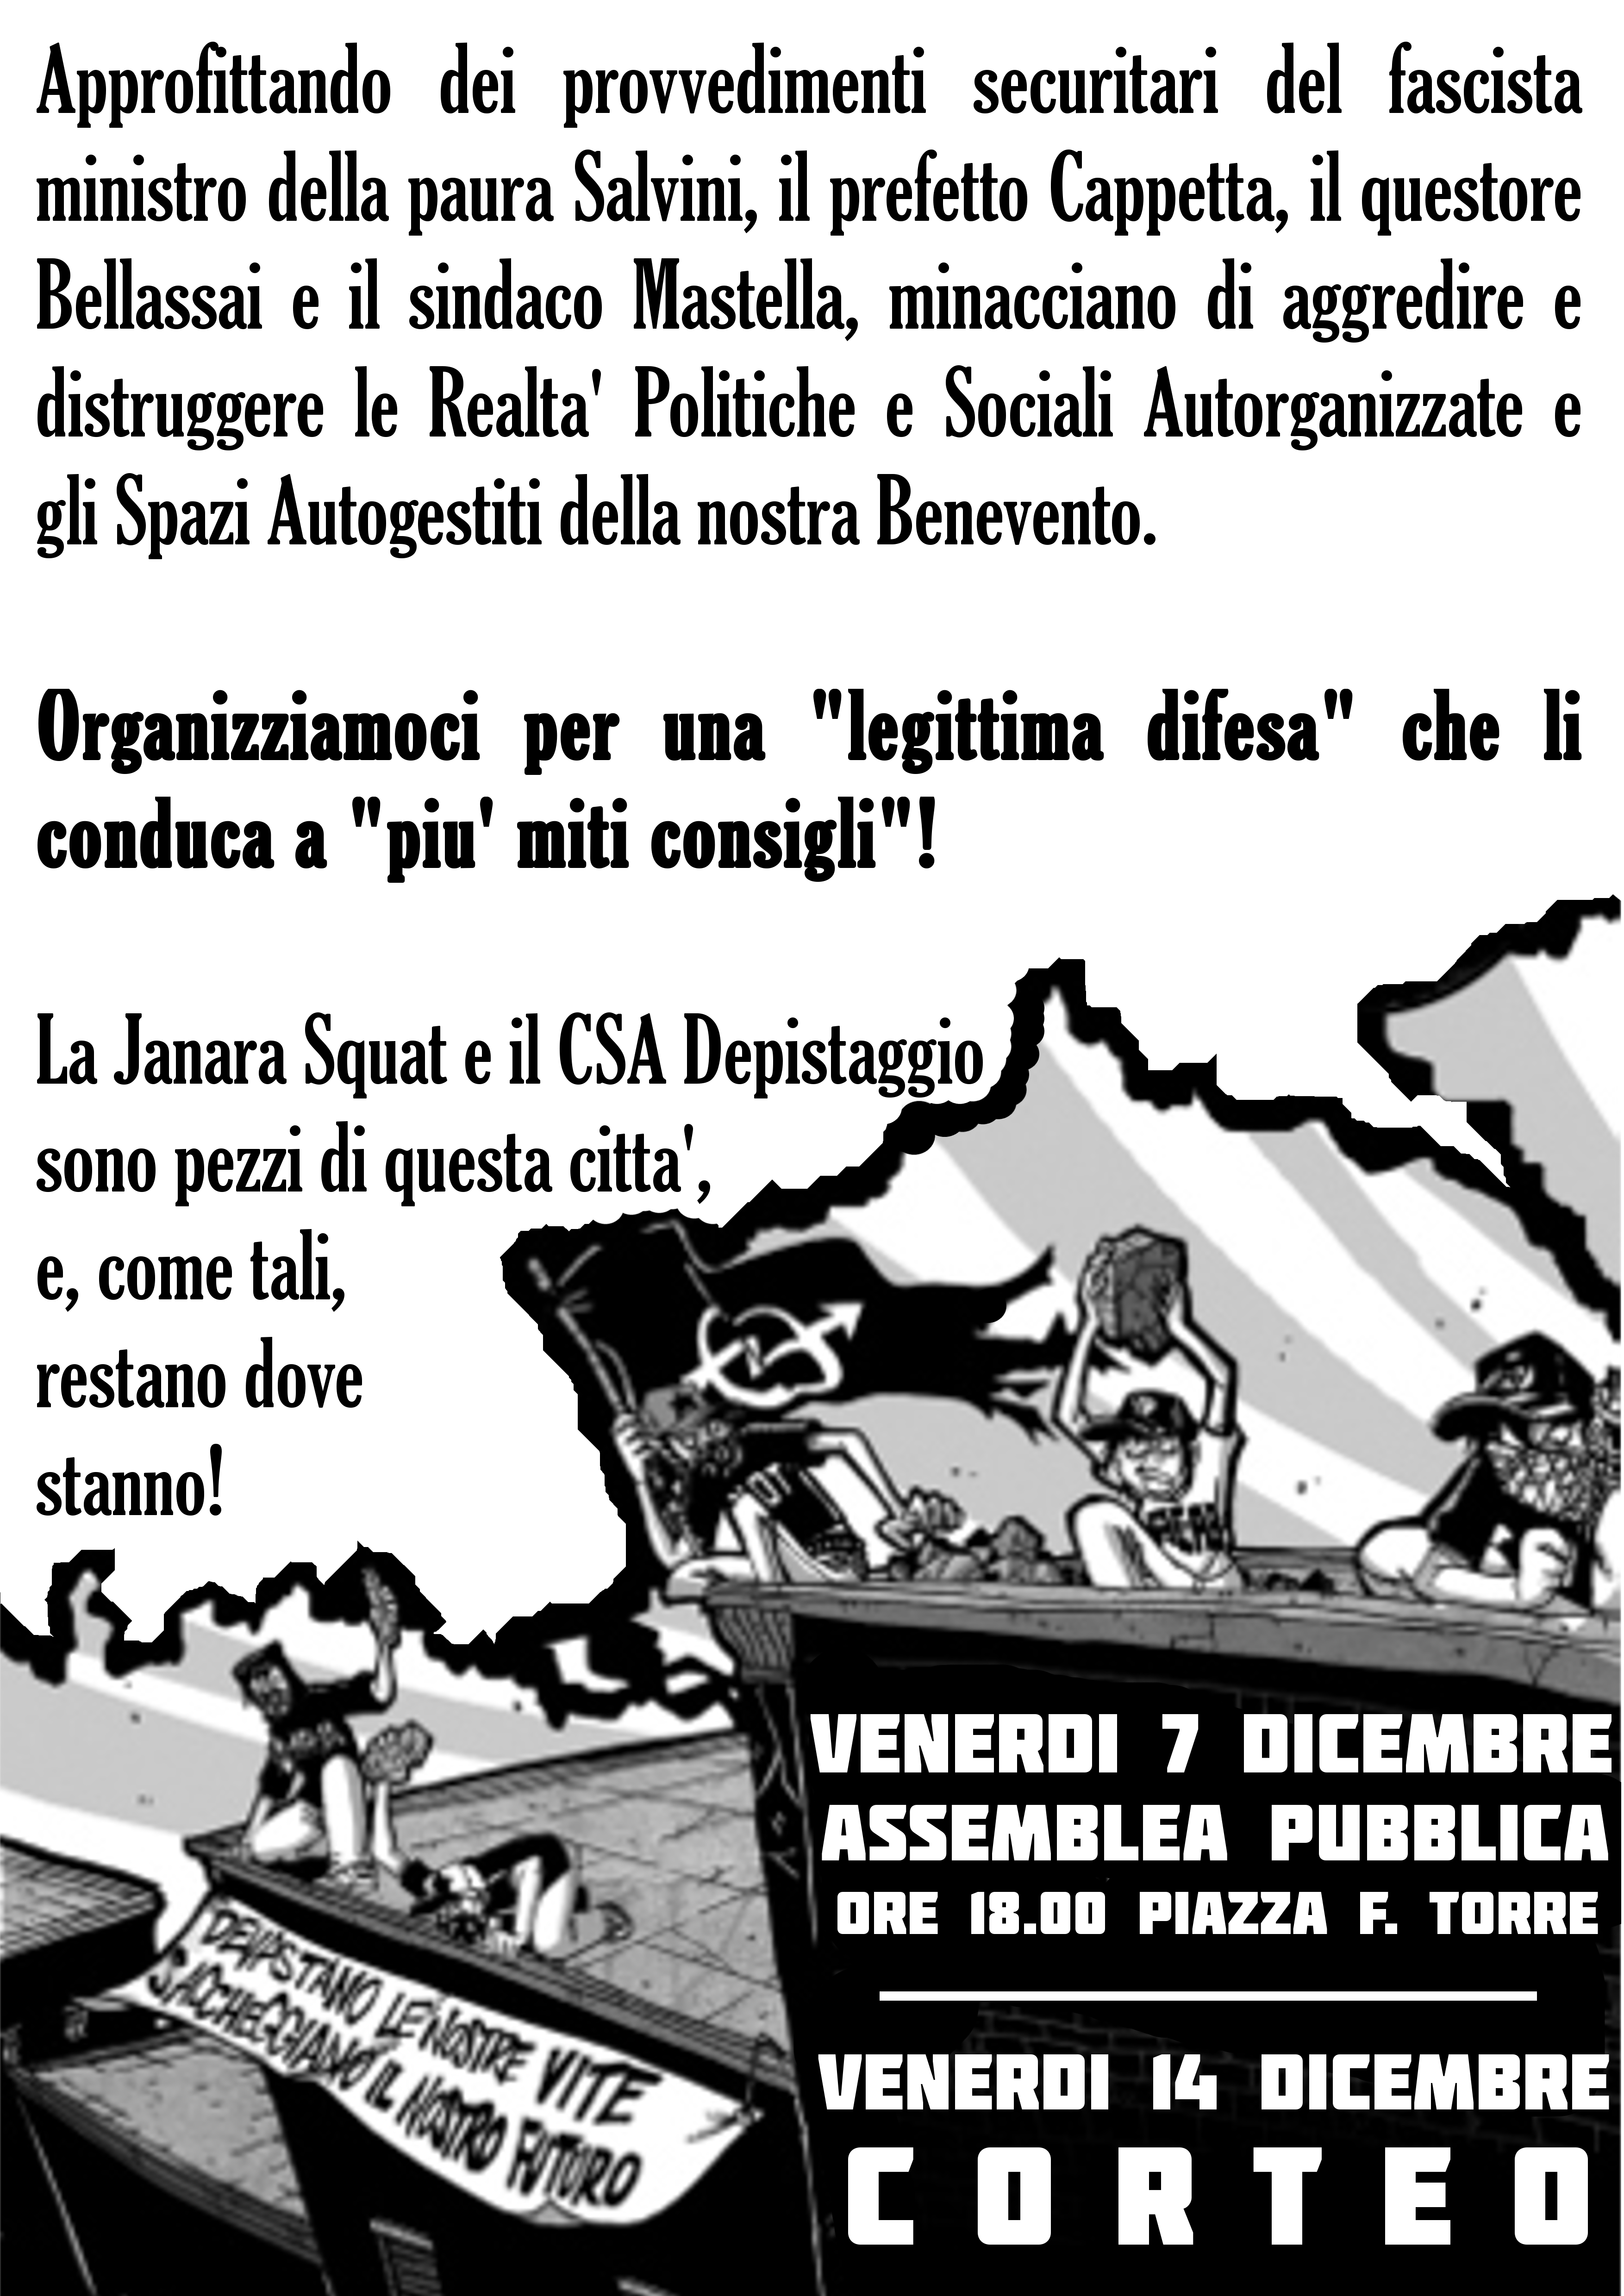 Benevento| Depistaggio e Janara Squat: iniziative comuni contro la “barbarie capitalista”